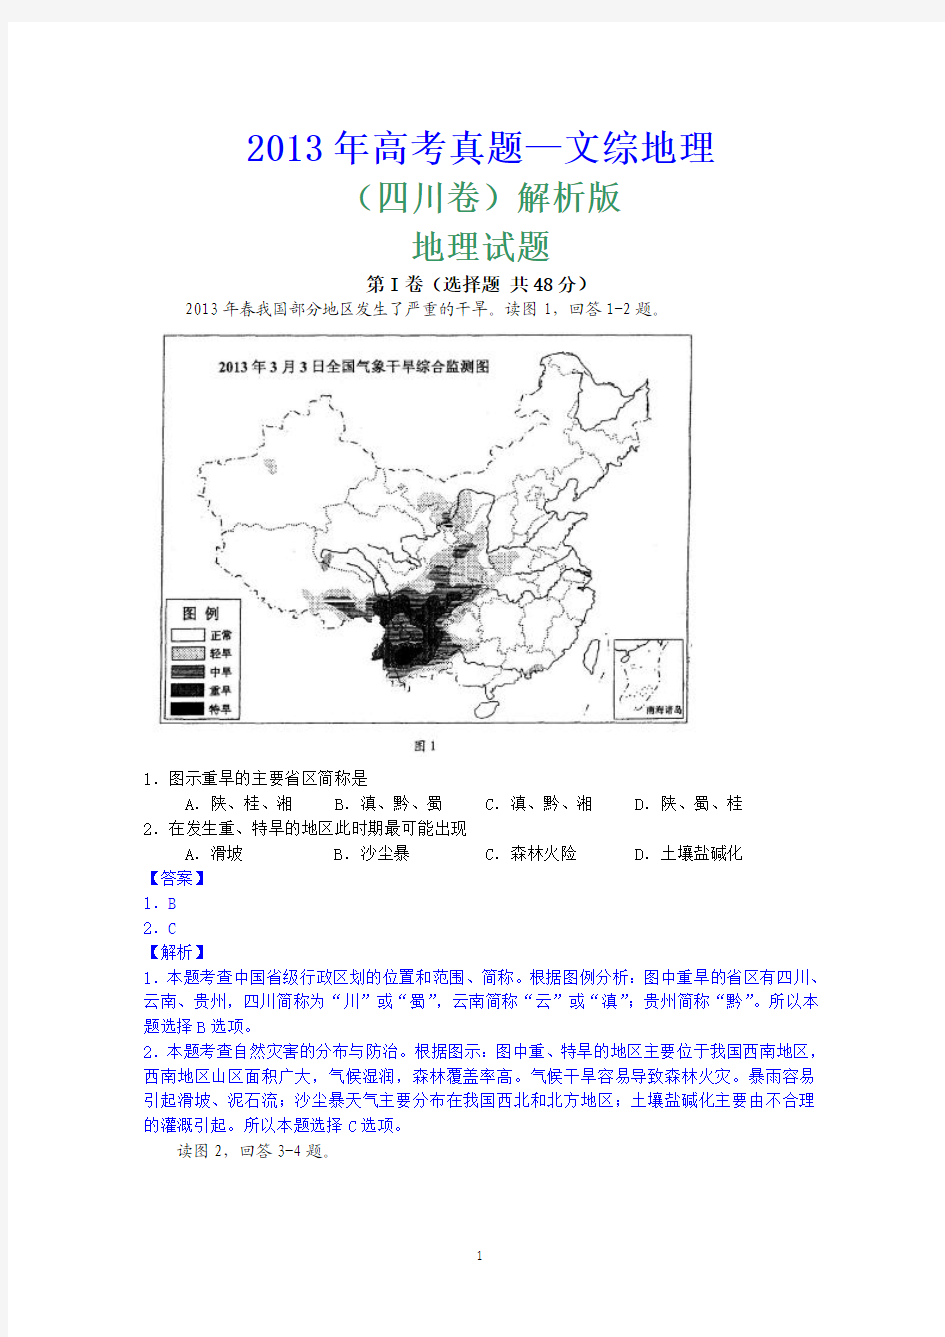 2013年高考真题——文综地理(四川卷)解析版